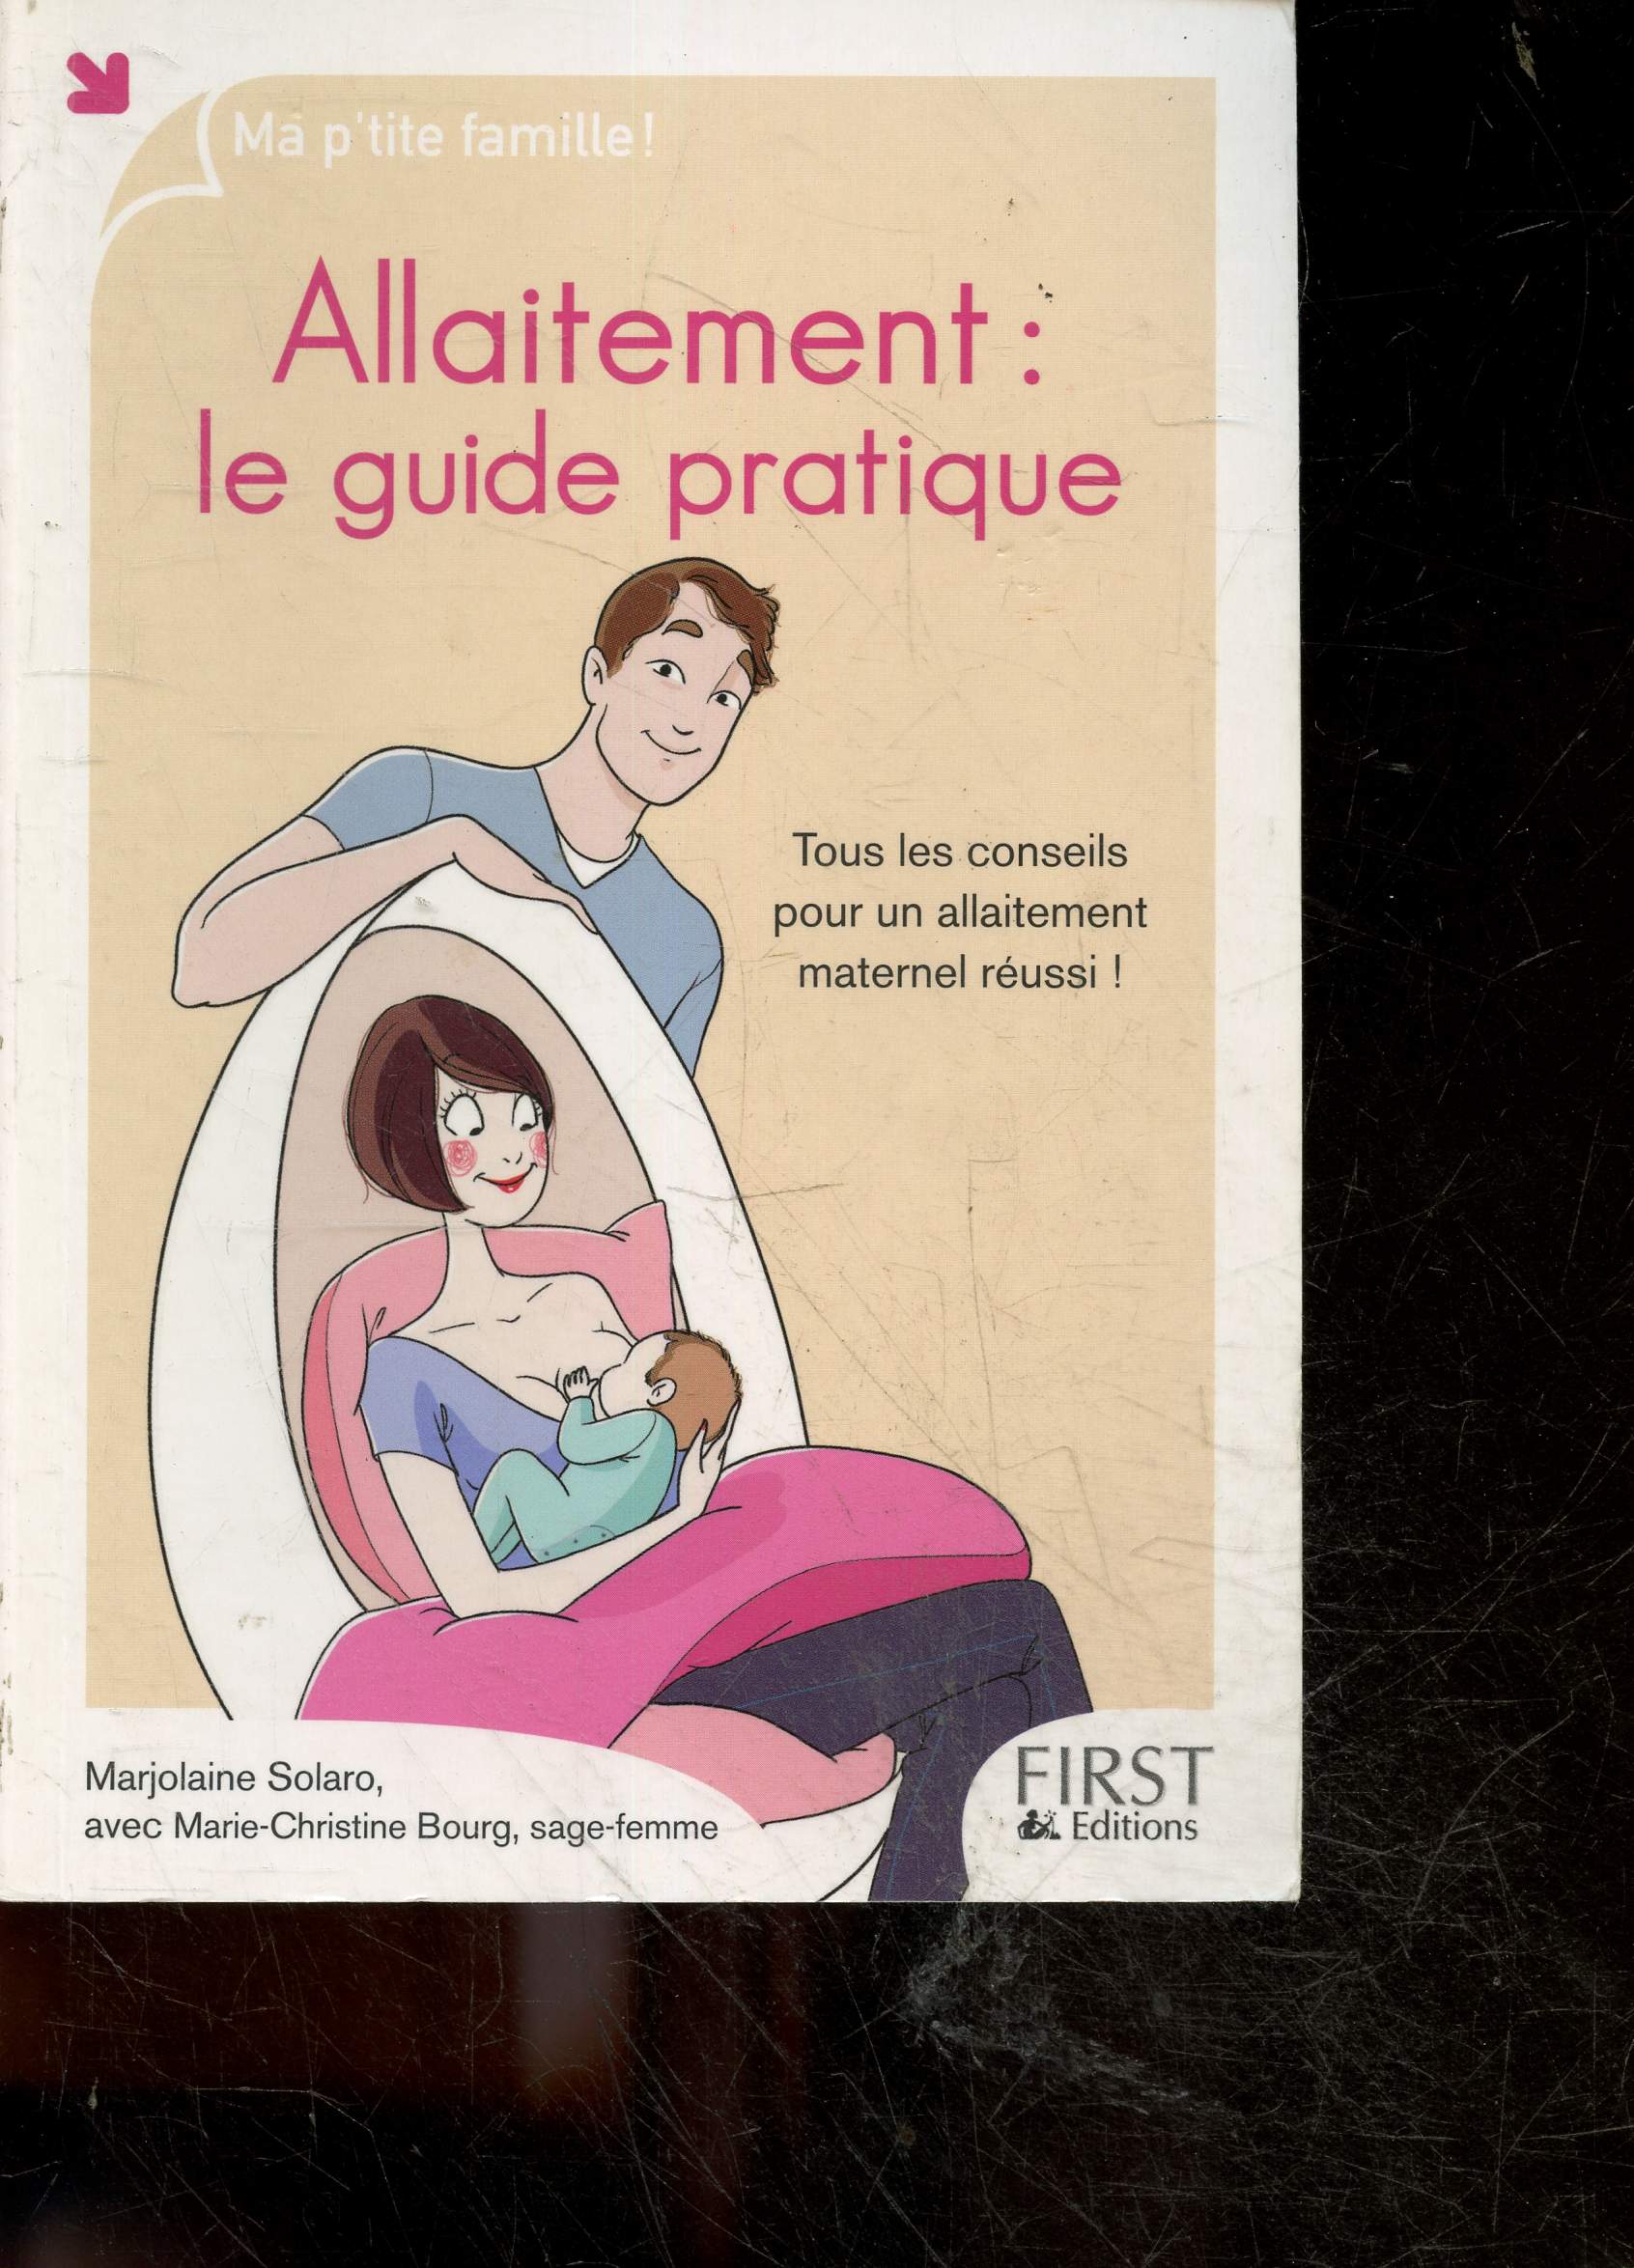 Allaitement - Le guide pratique - Ma p'tite famille ! tous les conseils pour un allaitement maternel reussi